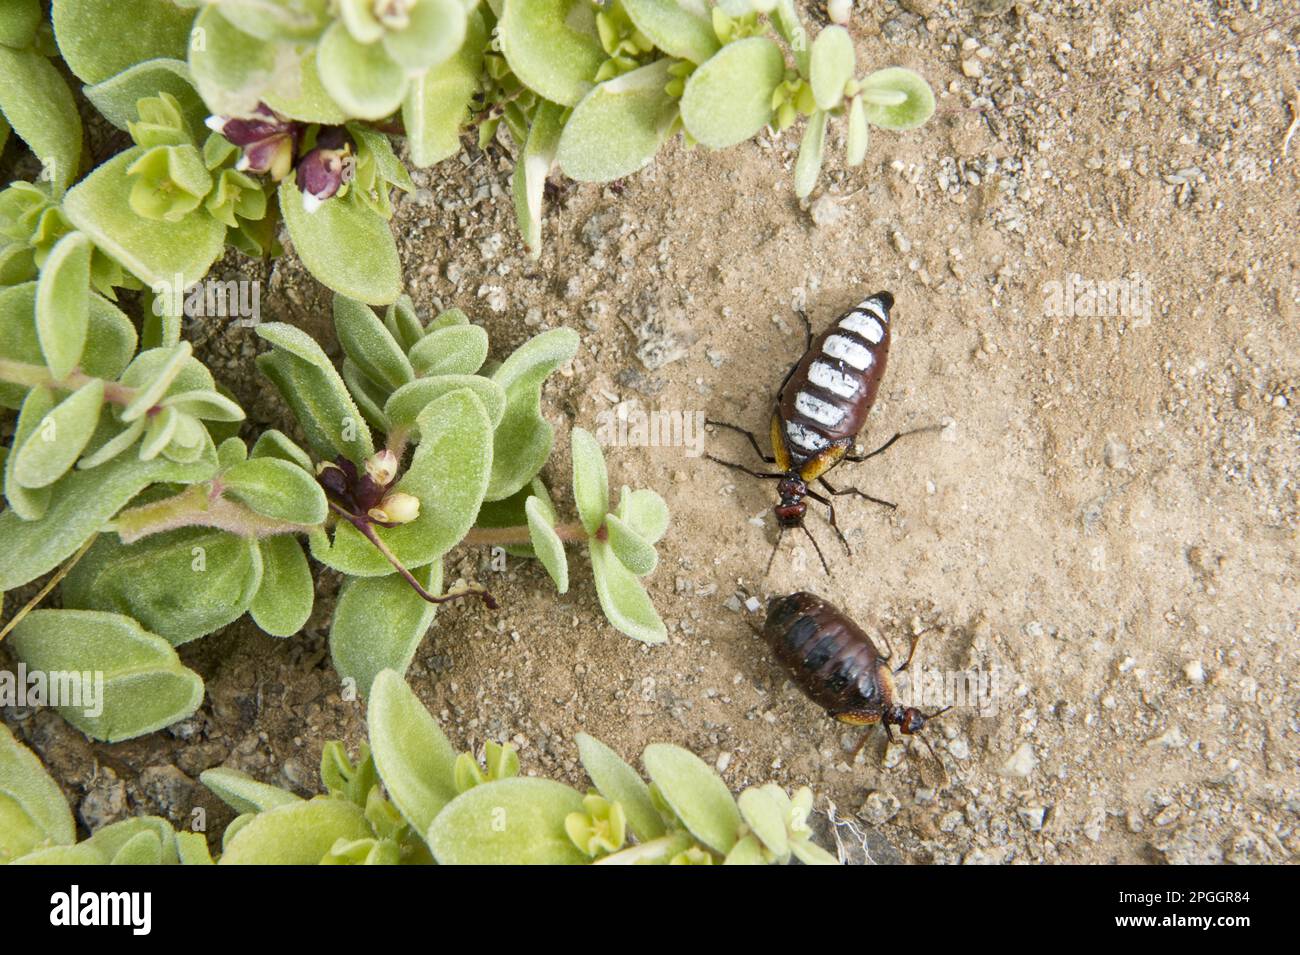 Blister beetle (Pseudomeloe sanguinolentus), adult male and female, Parque National Pan de Azucar, Atacama Desert, Chile Stock Photo